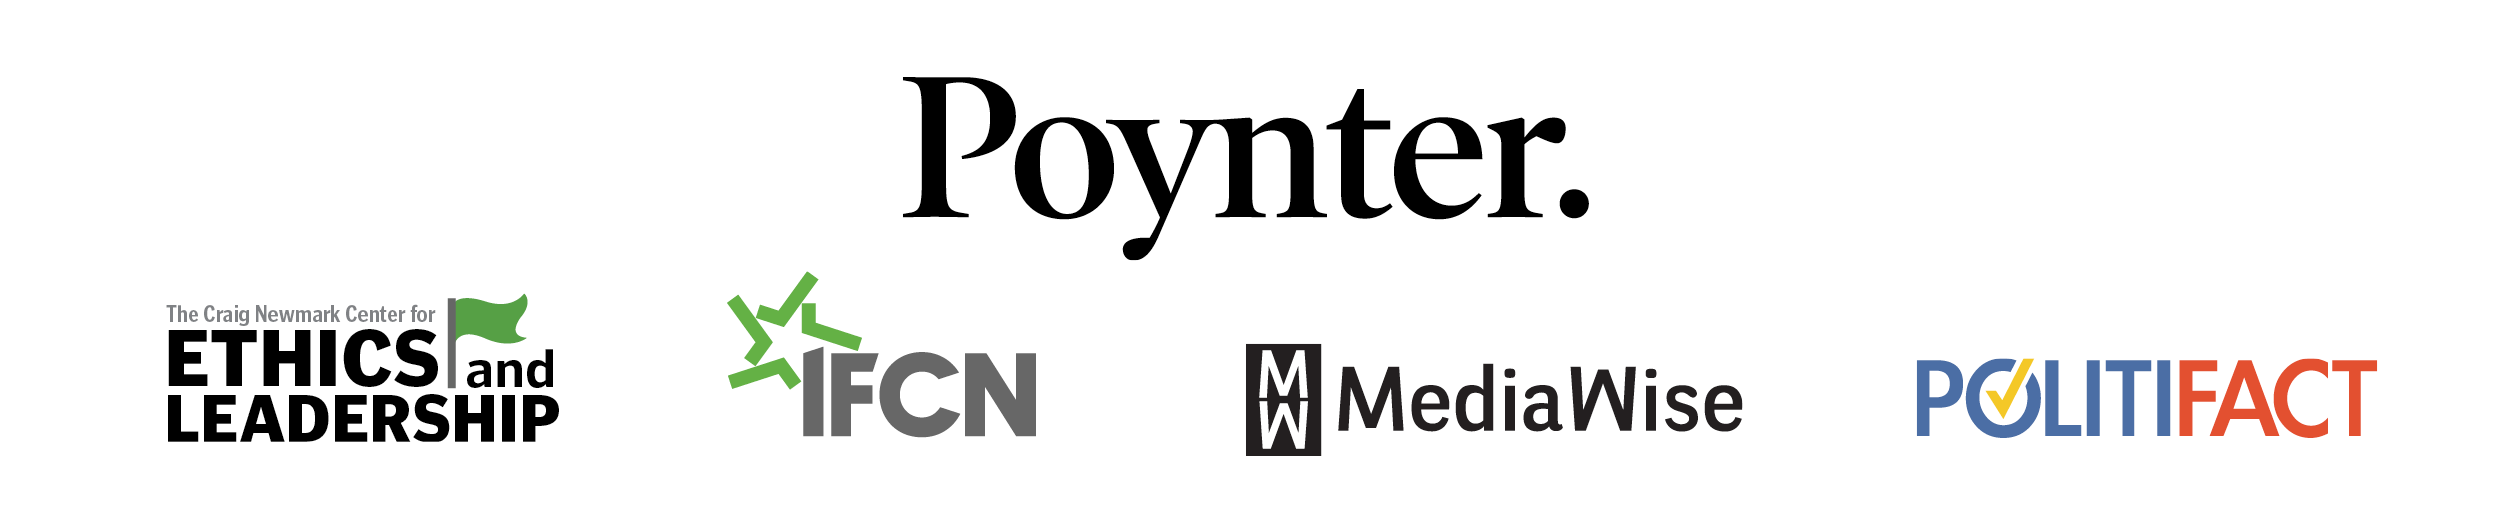 Poynter logo bar